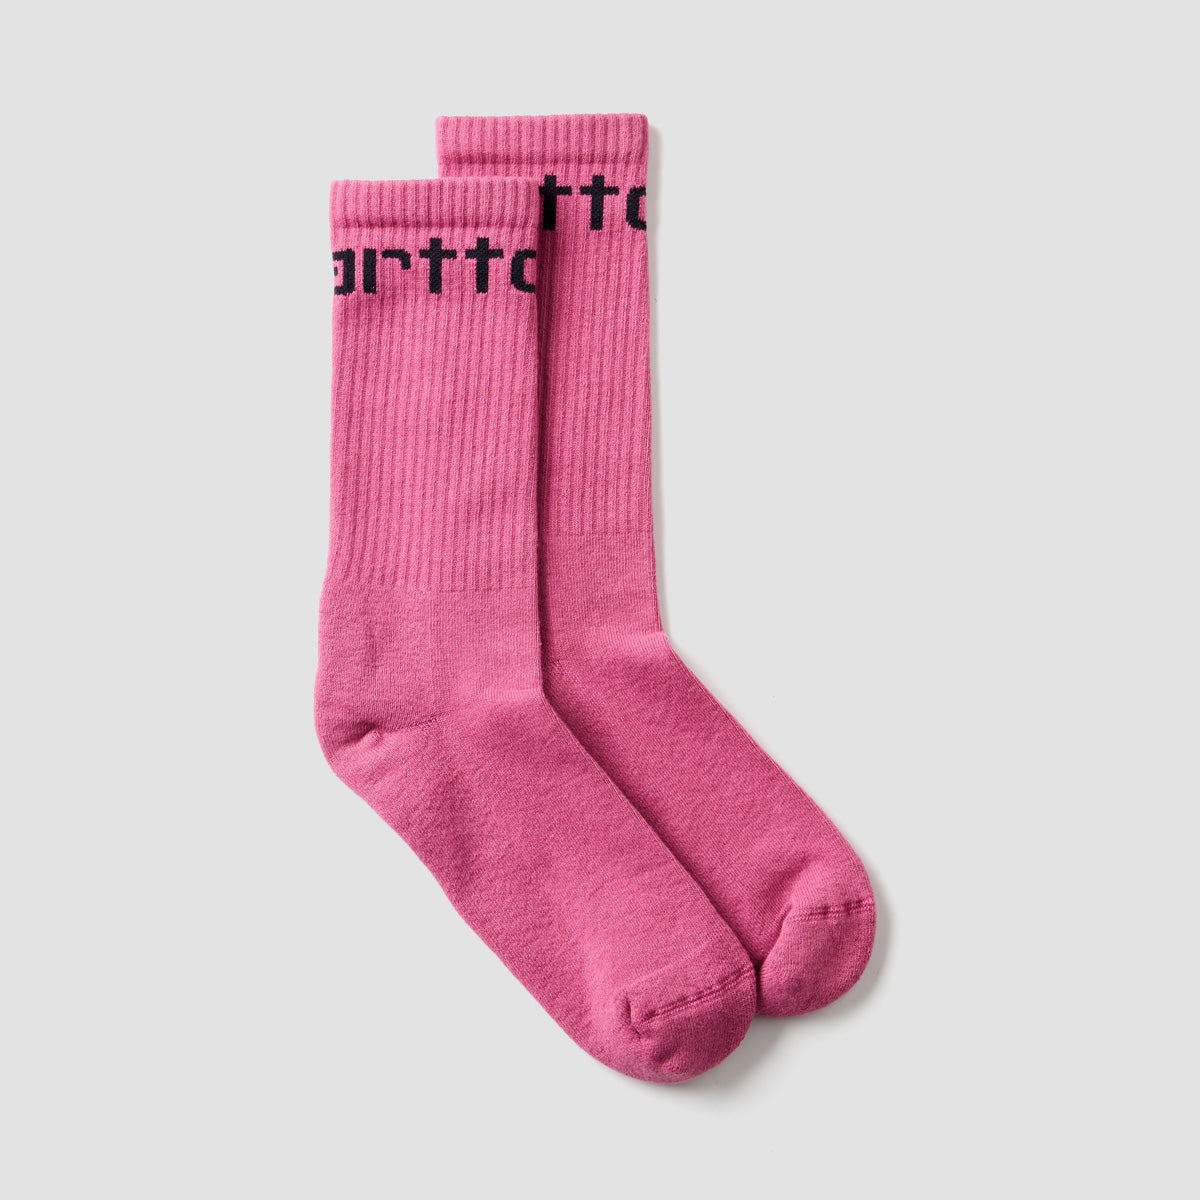 Carhartt WIP Carhartt Socks Magenta/Black